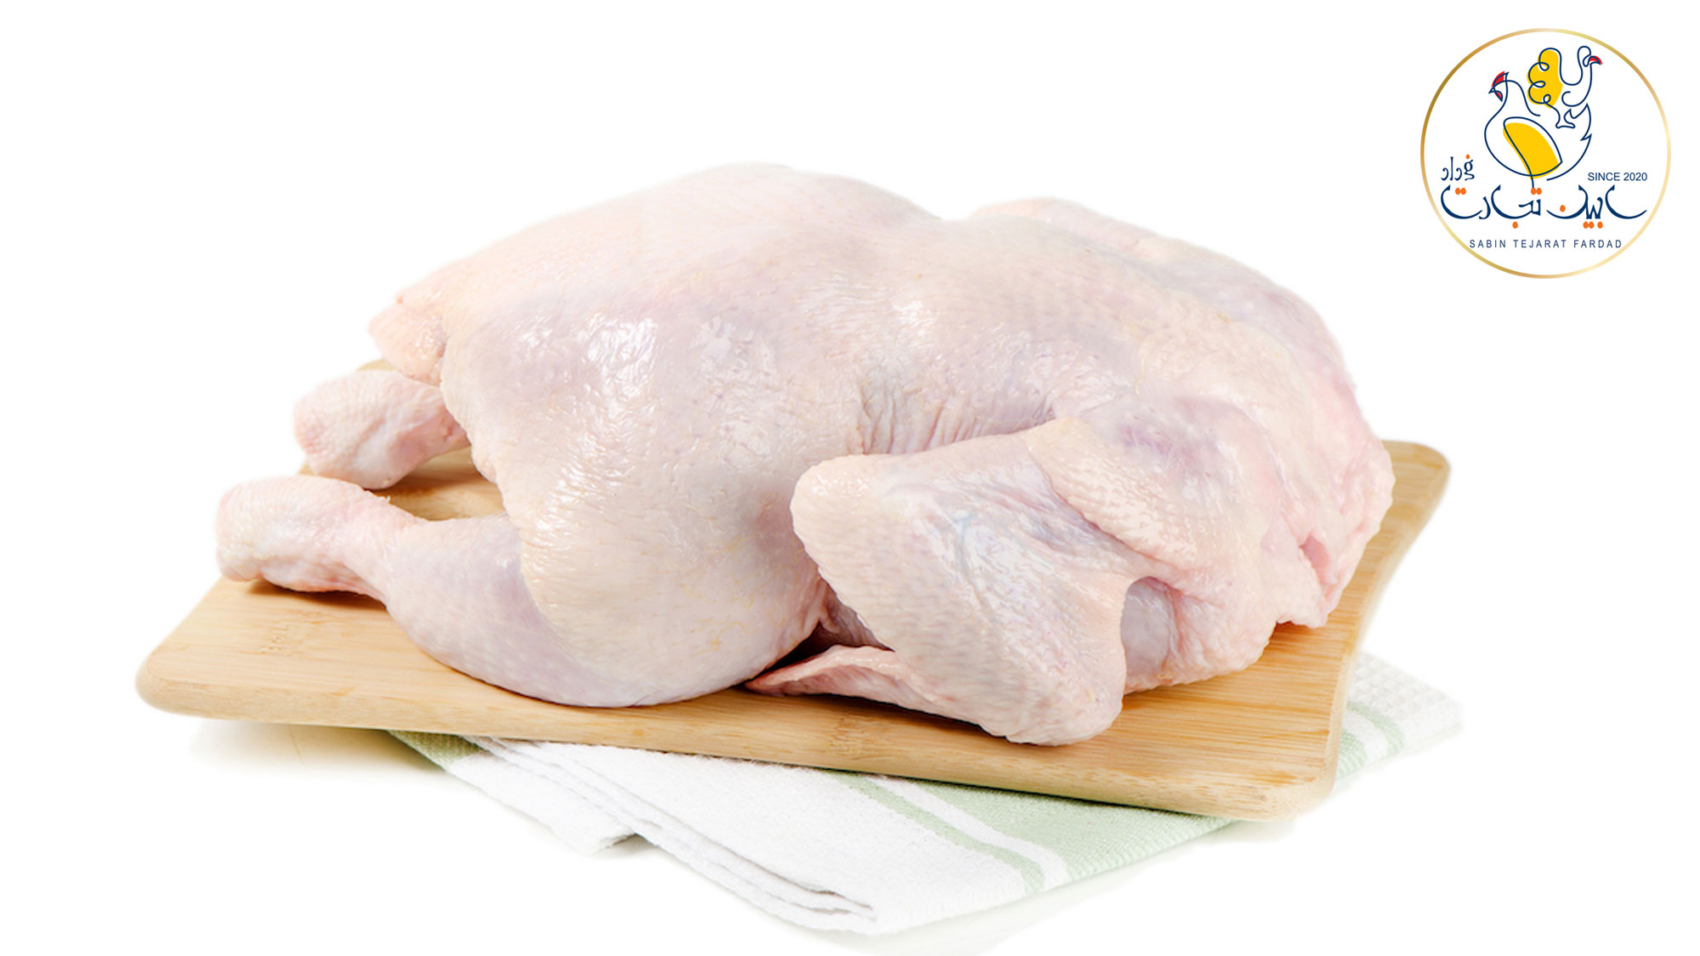 مهلت یک هفته ای مجلس به وزارت جهاد کشاورزی برای کنترل قیمت مرغ